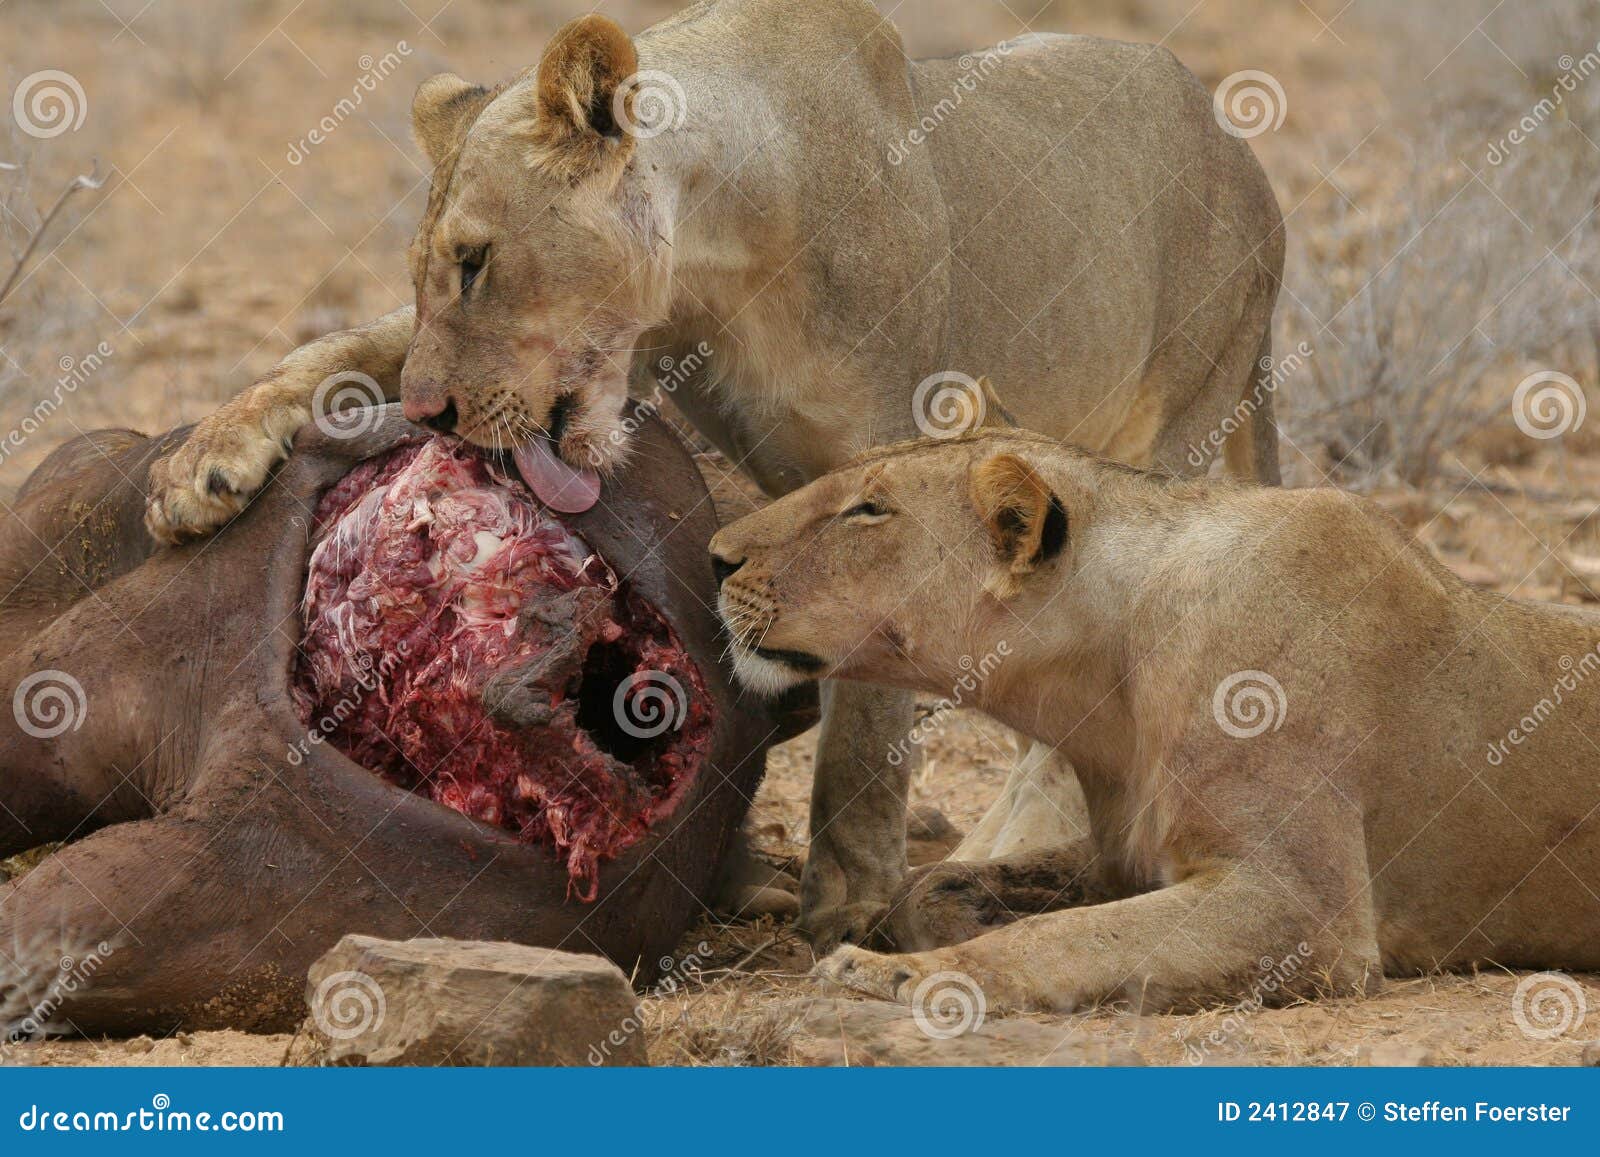 Lions eating buffalo stock image image